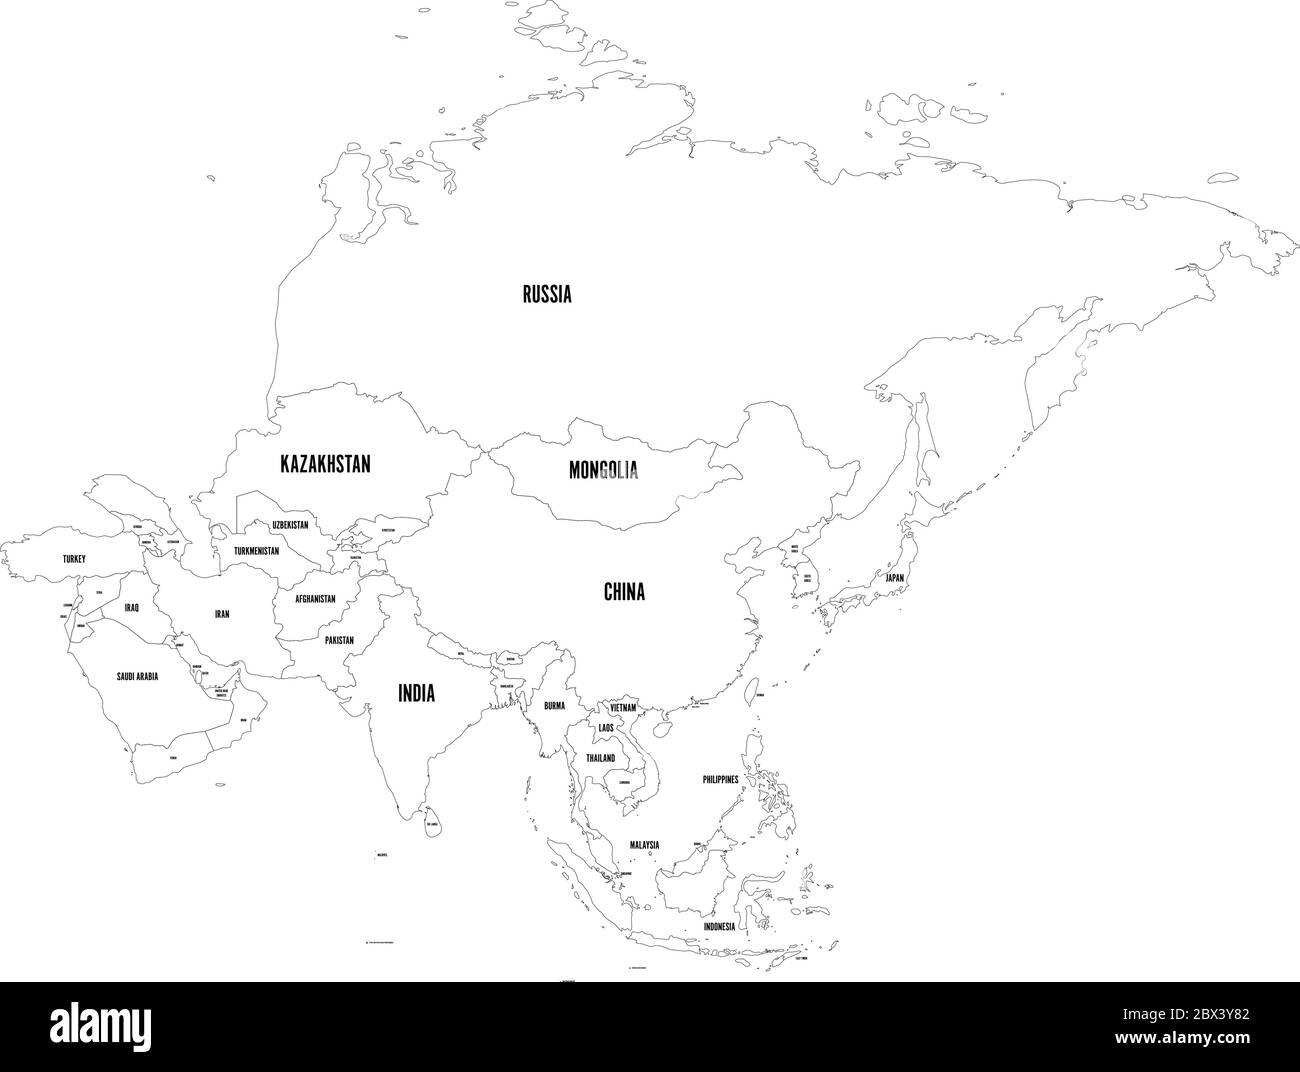 Carte politique du continent asiatique. Illustration vectorielle. Illustration de Vecteur